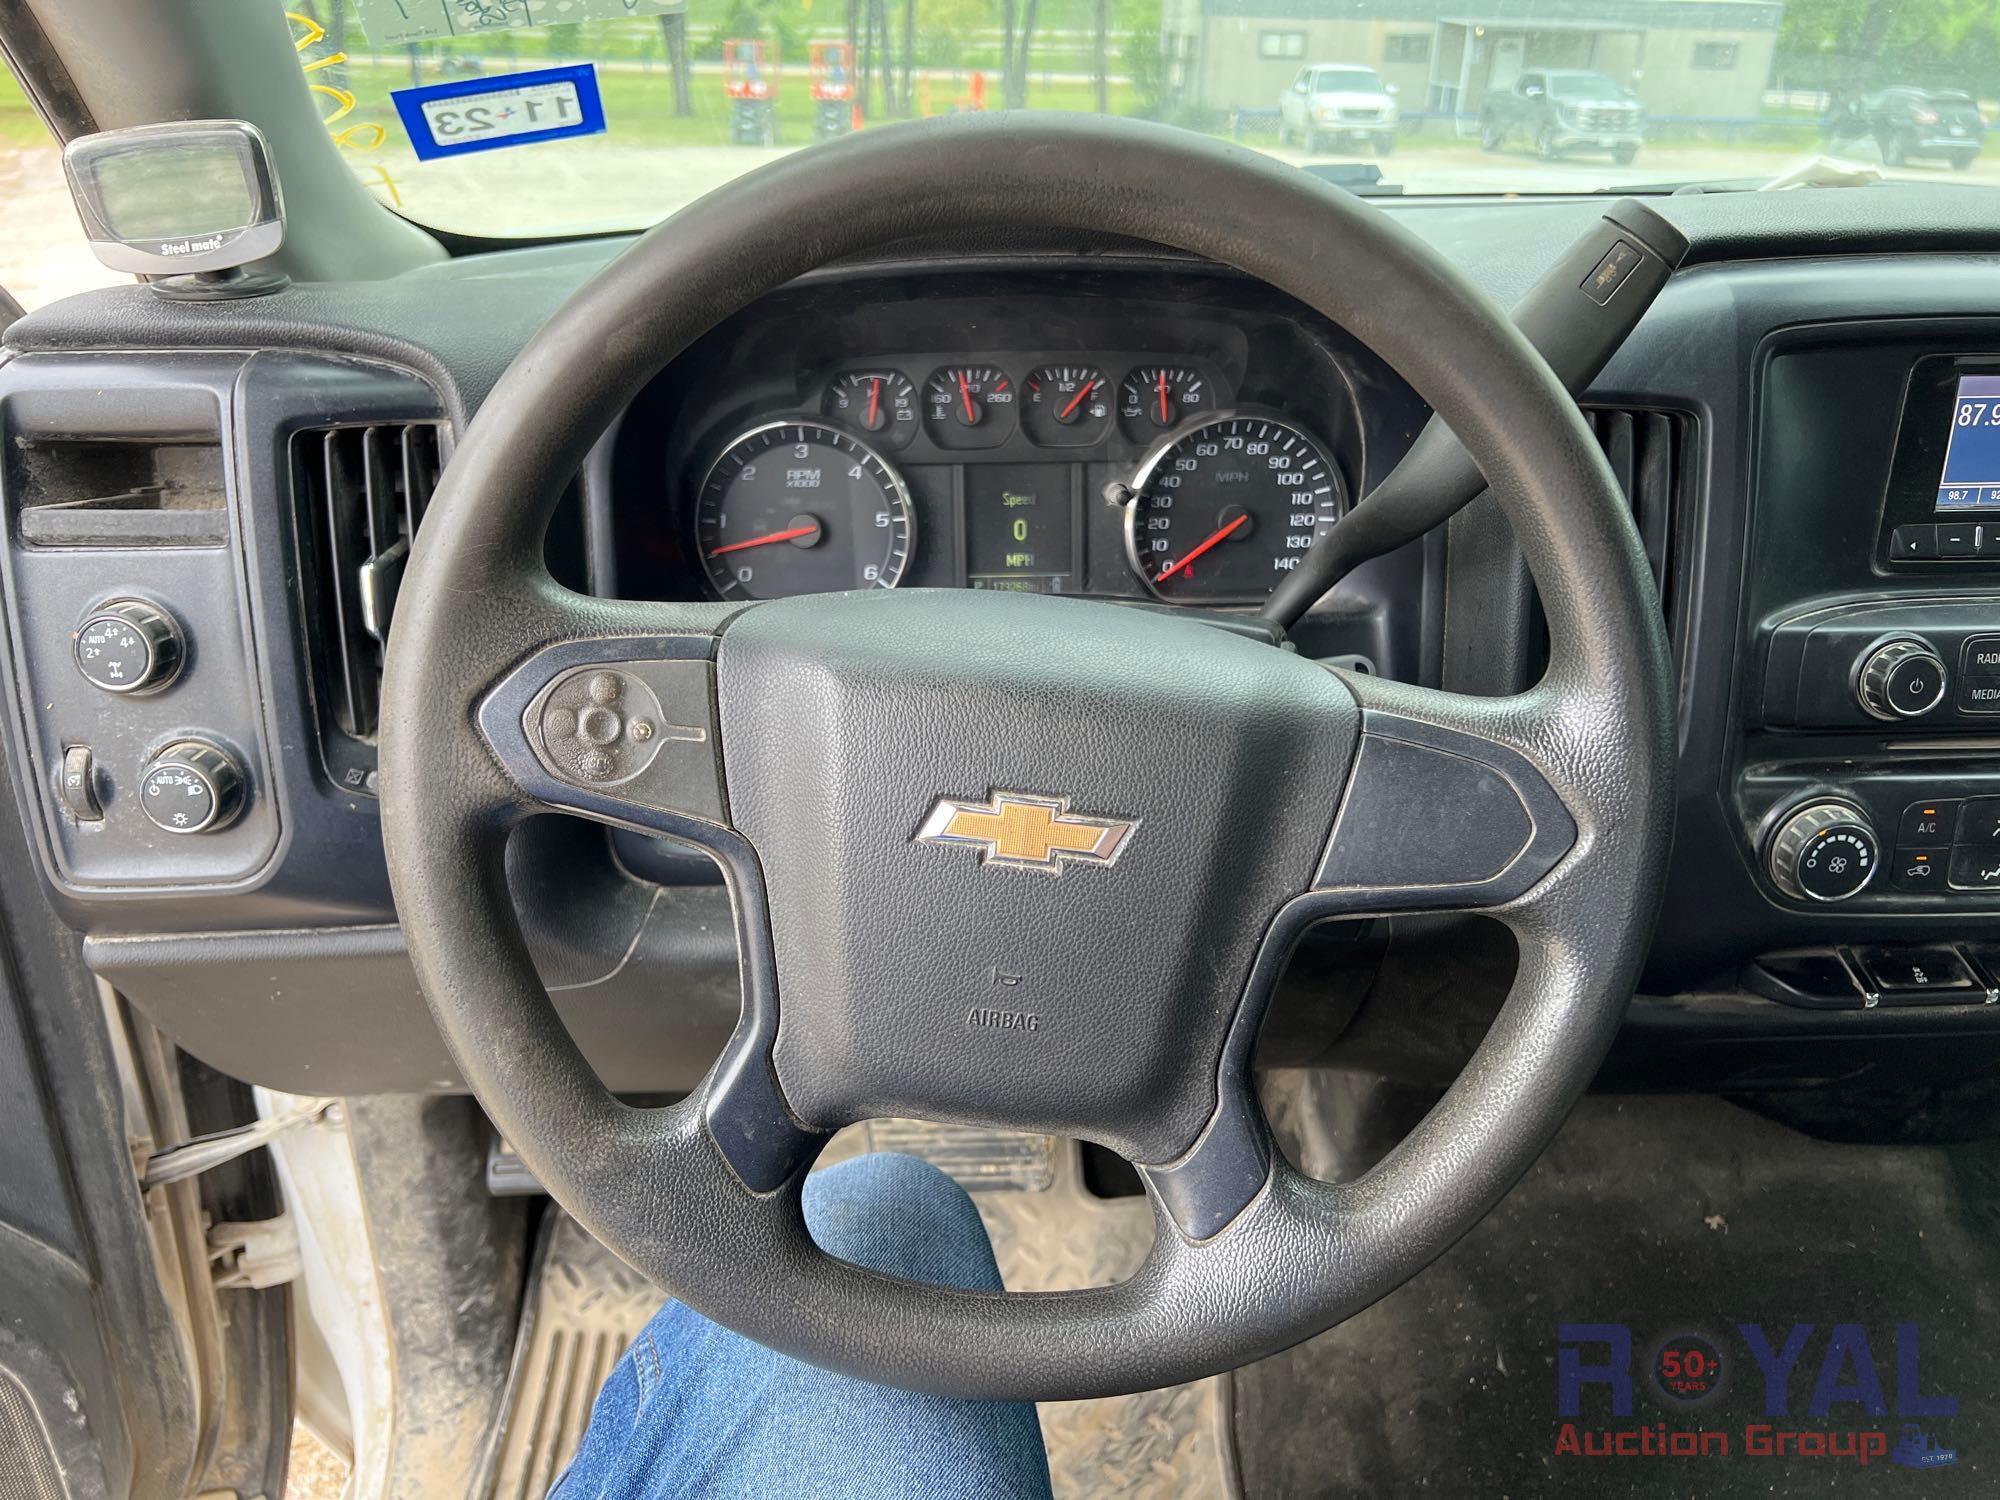 2014 Chevrolet Silverado 4x4 Double Cab Pickup Truck